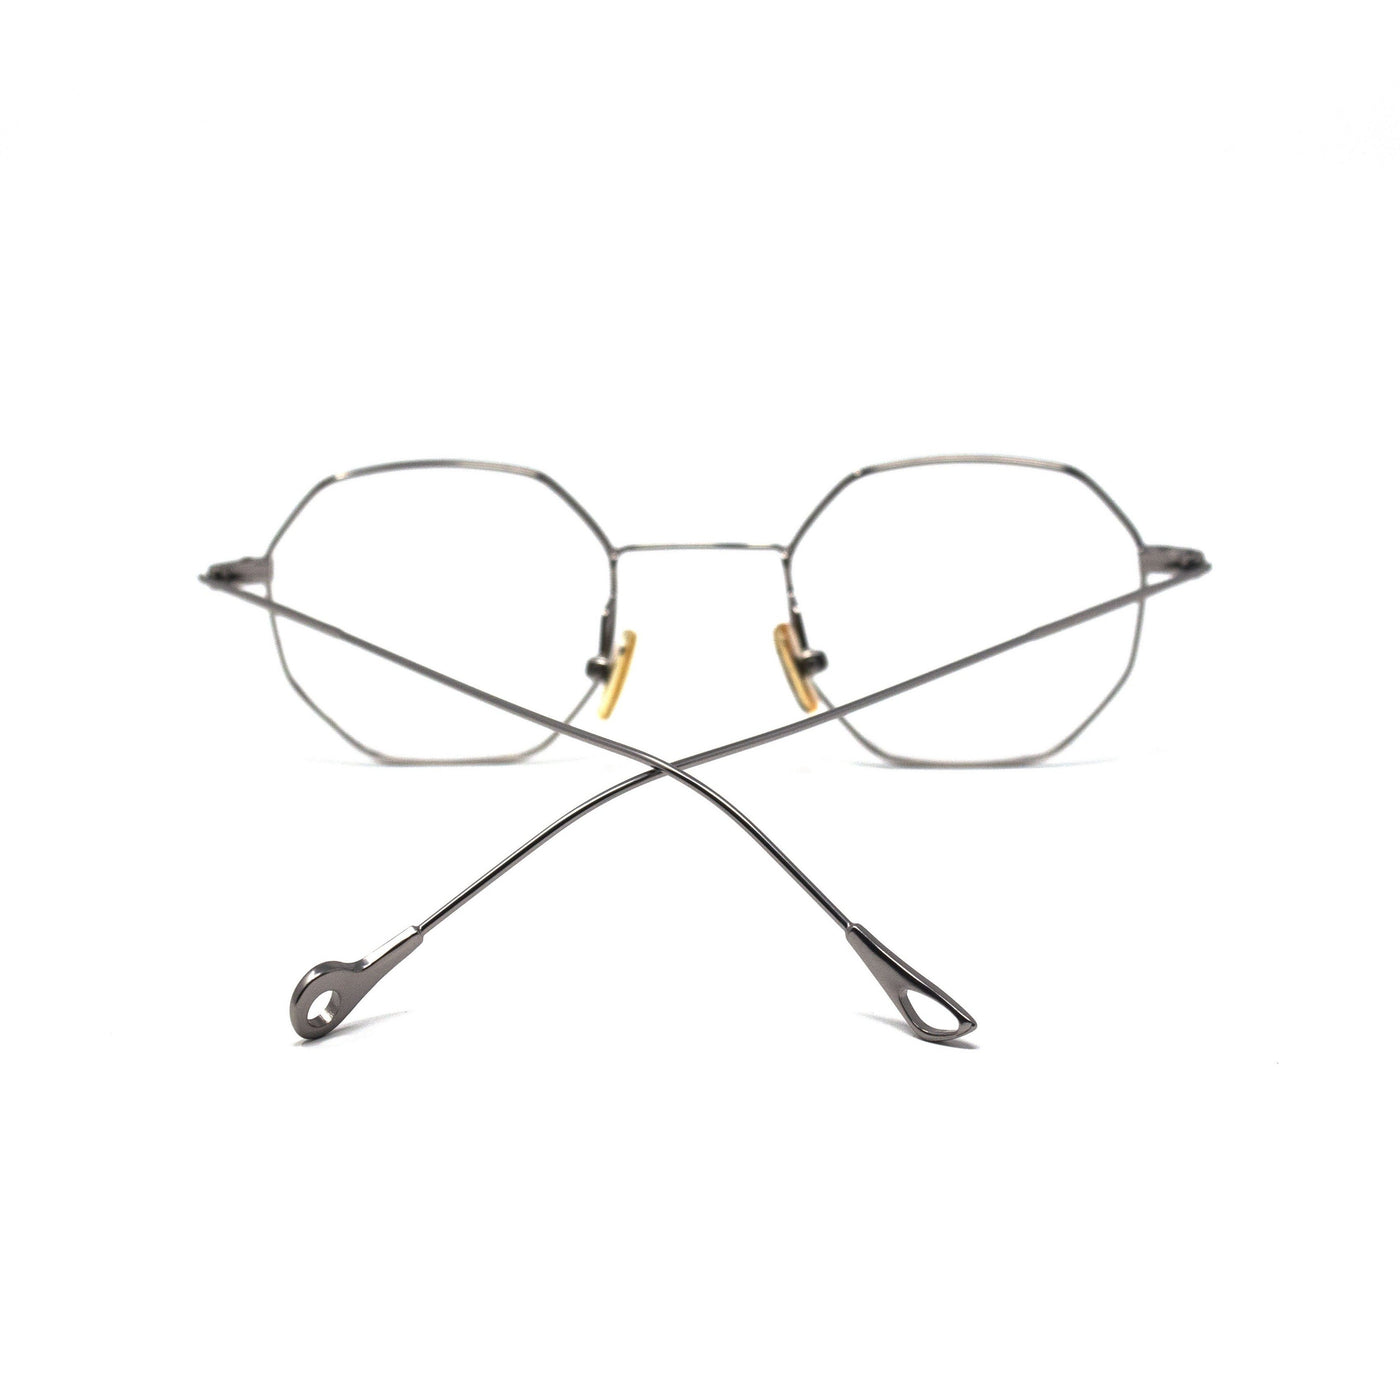 Octagonal Silver Metal Frame Eyewear